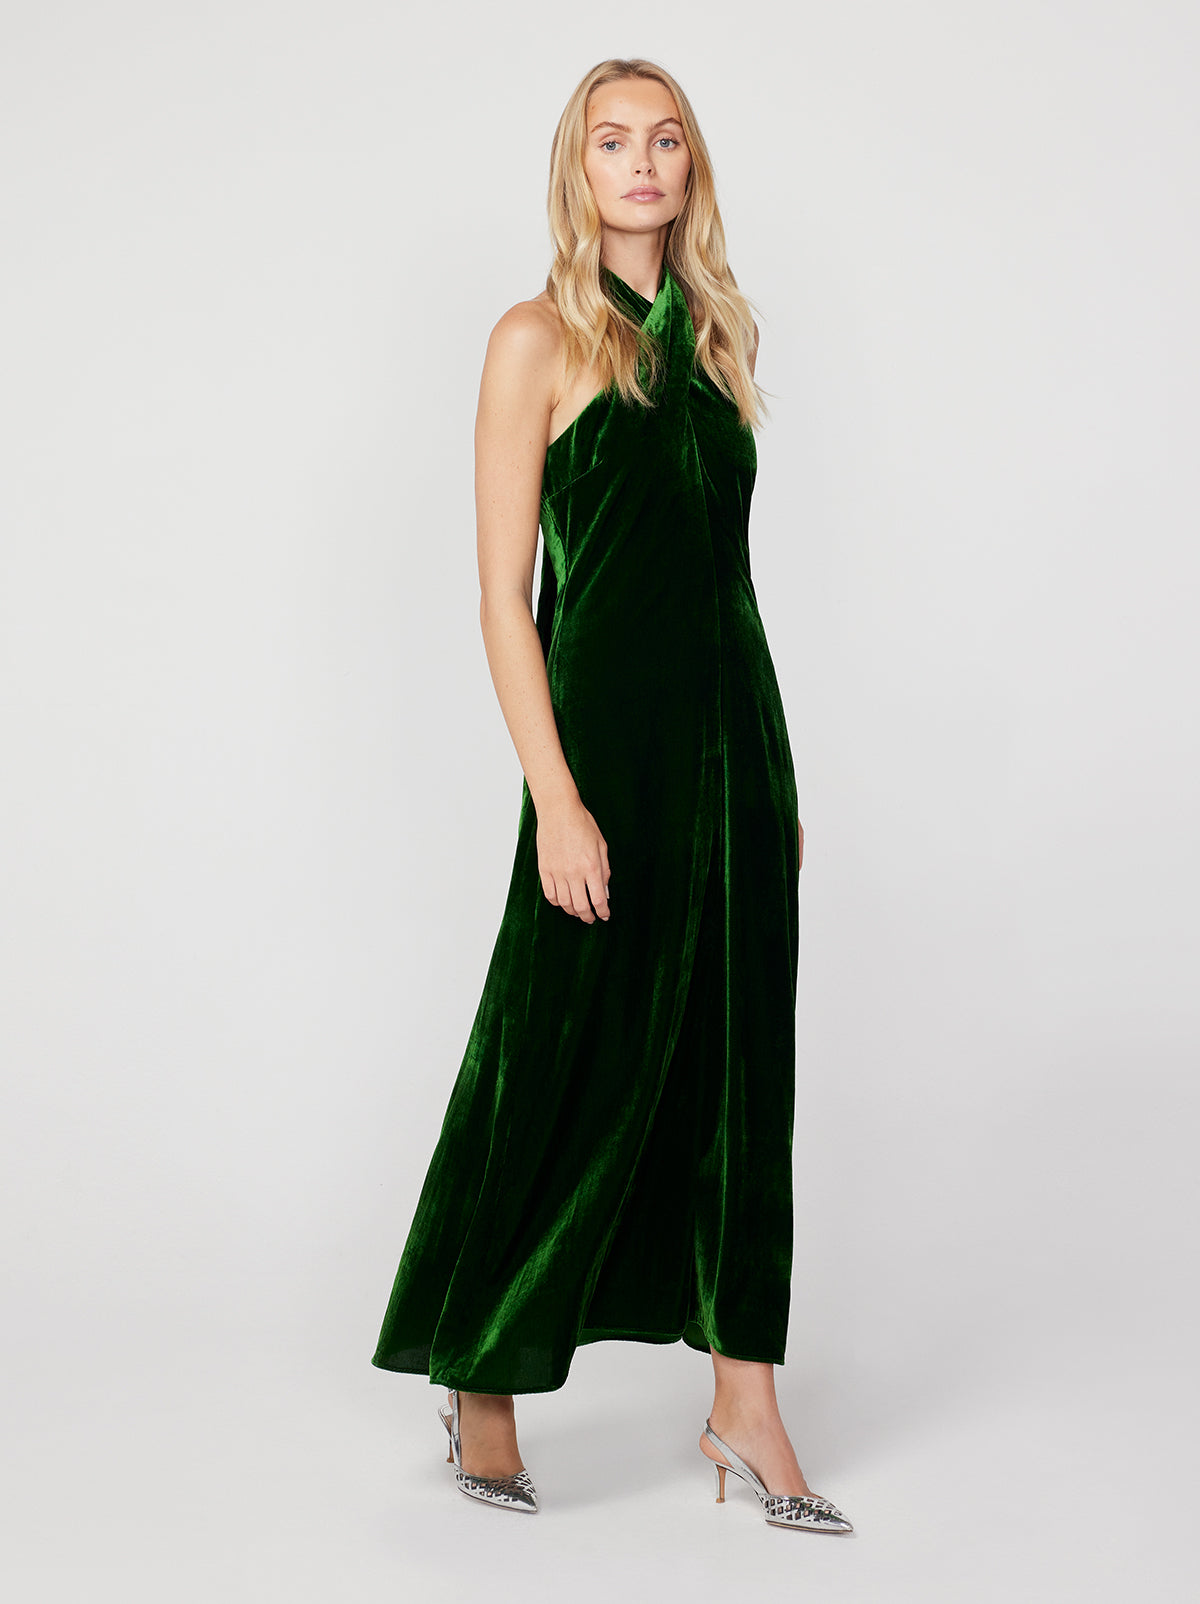 Neve Green Velvet Halter Dress By KITRI Studio